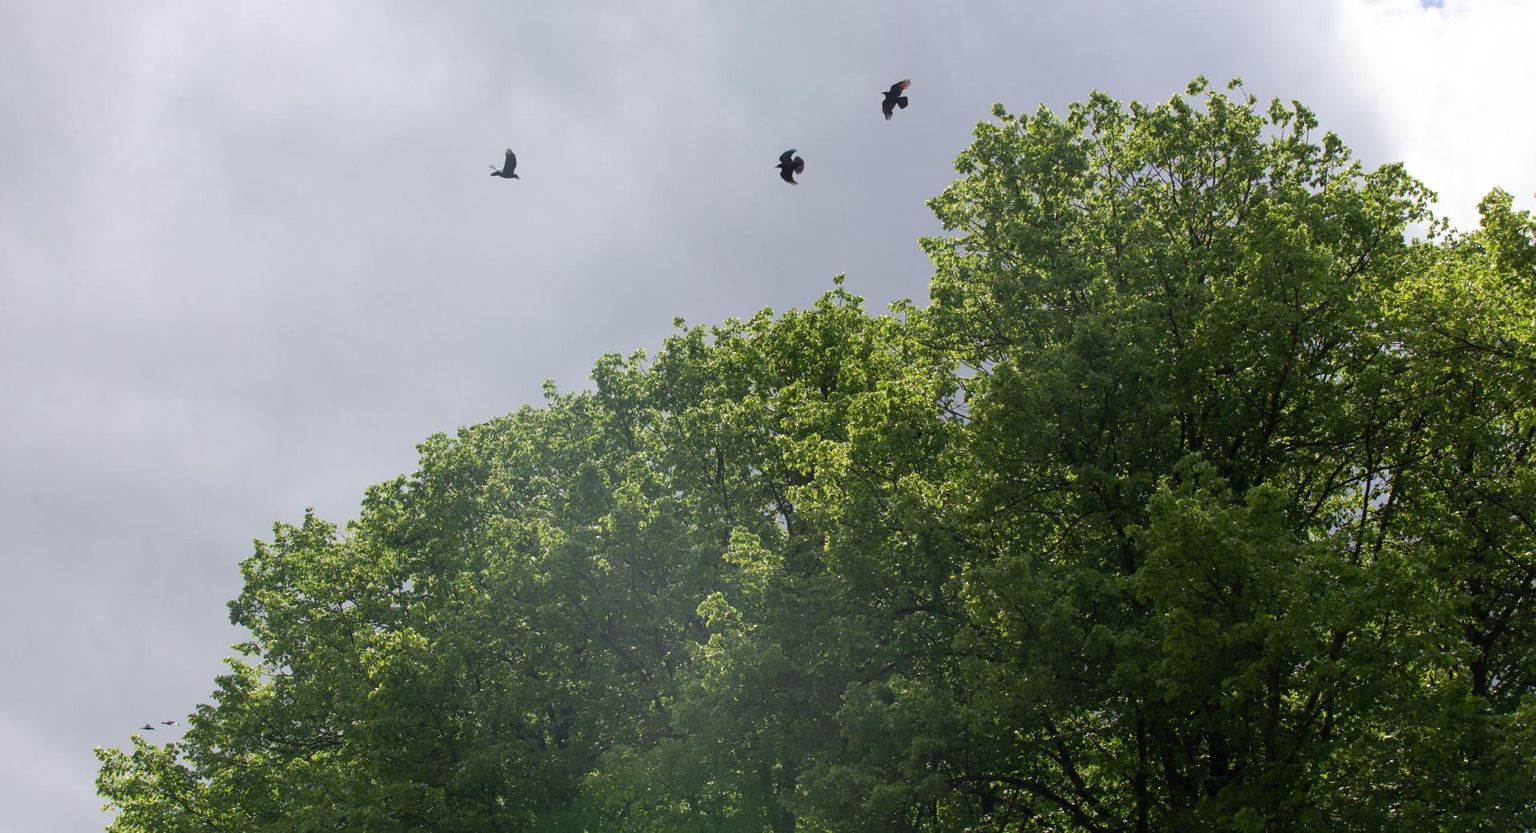 Vabadussillalt parki jalutades kuuleb künnivareste hoiatavat kraaksumist kaugele. Mitmed varesed lendavad puude kohal ja püüavad poegi kajakate eest kaitsta.